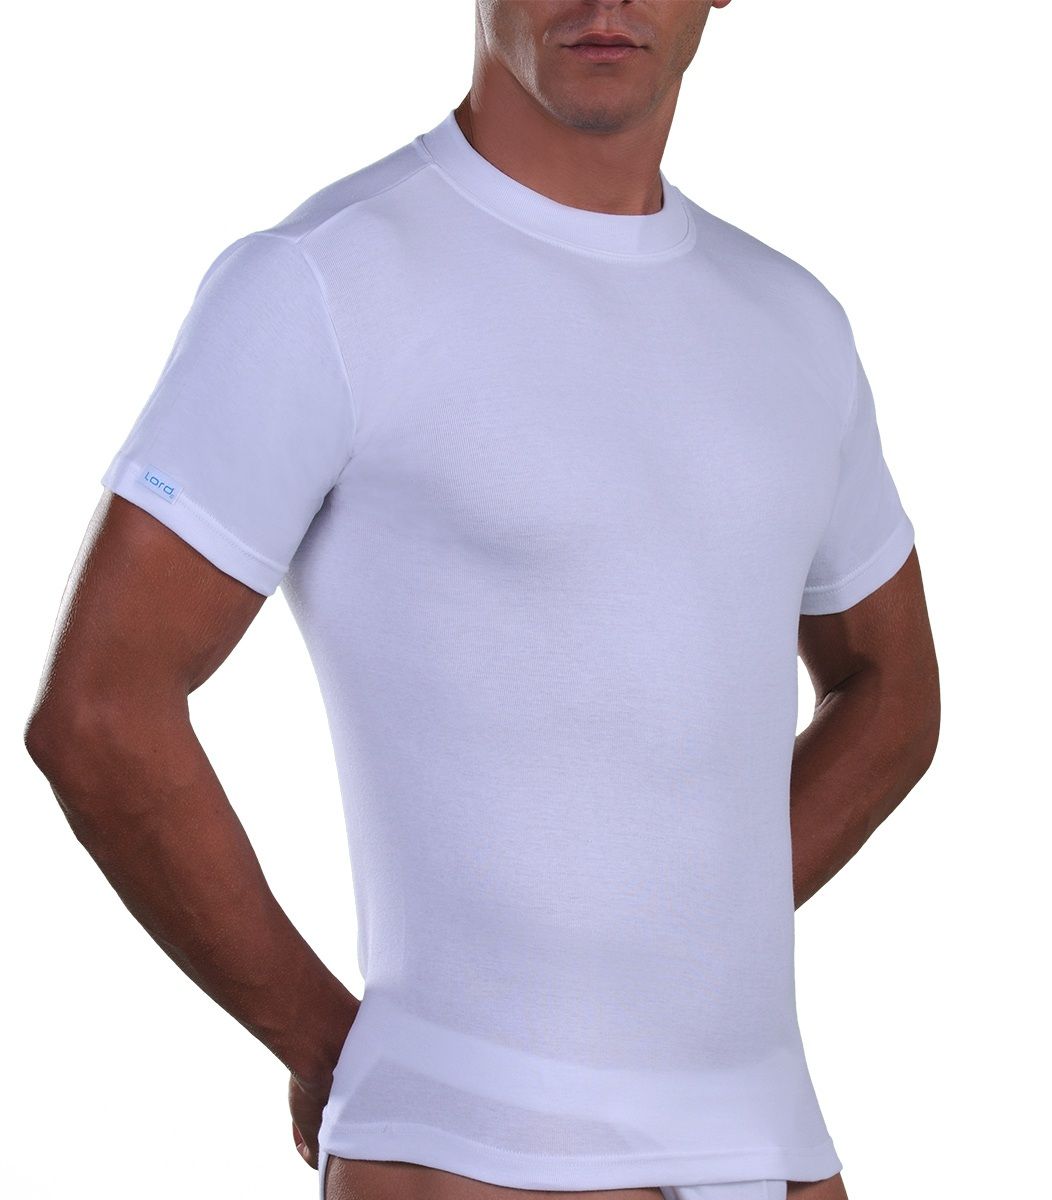 Cotton T-Shirt, crew neck, big sizes, white